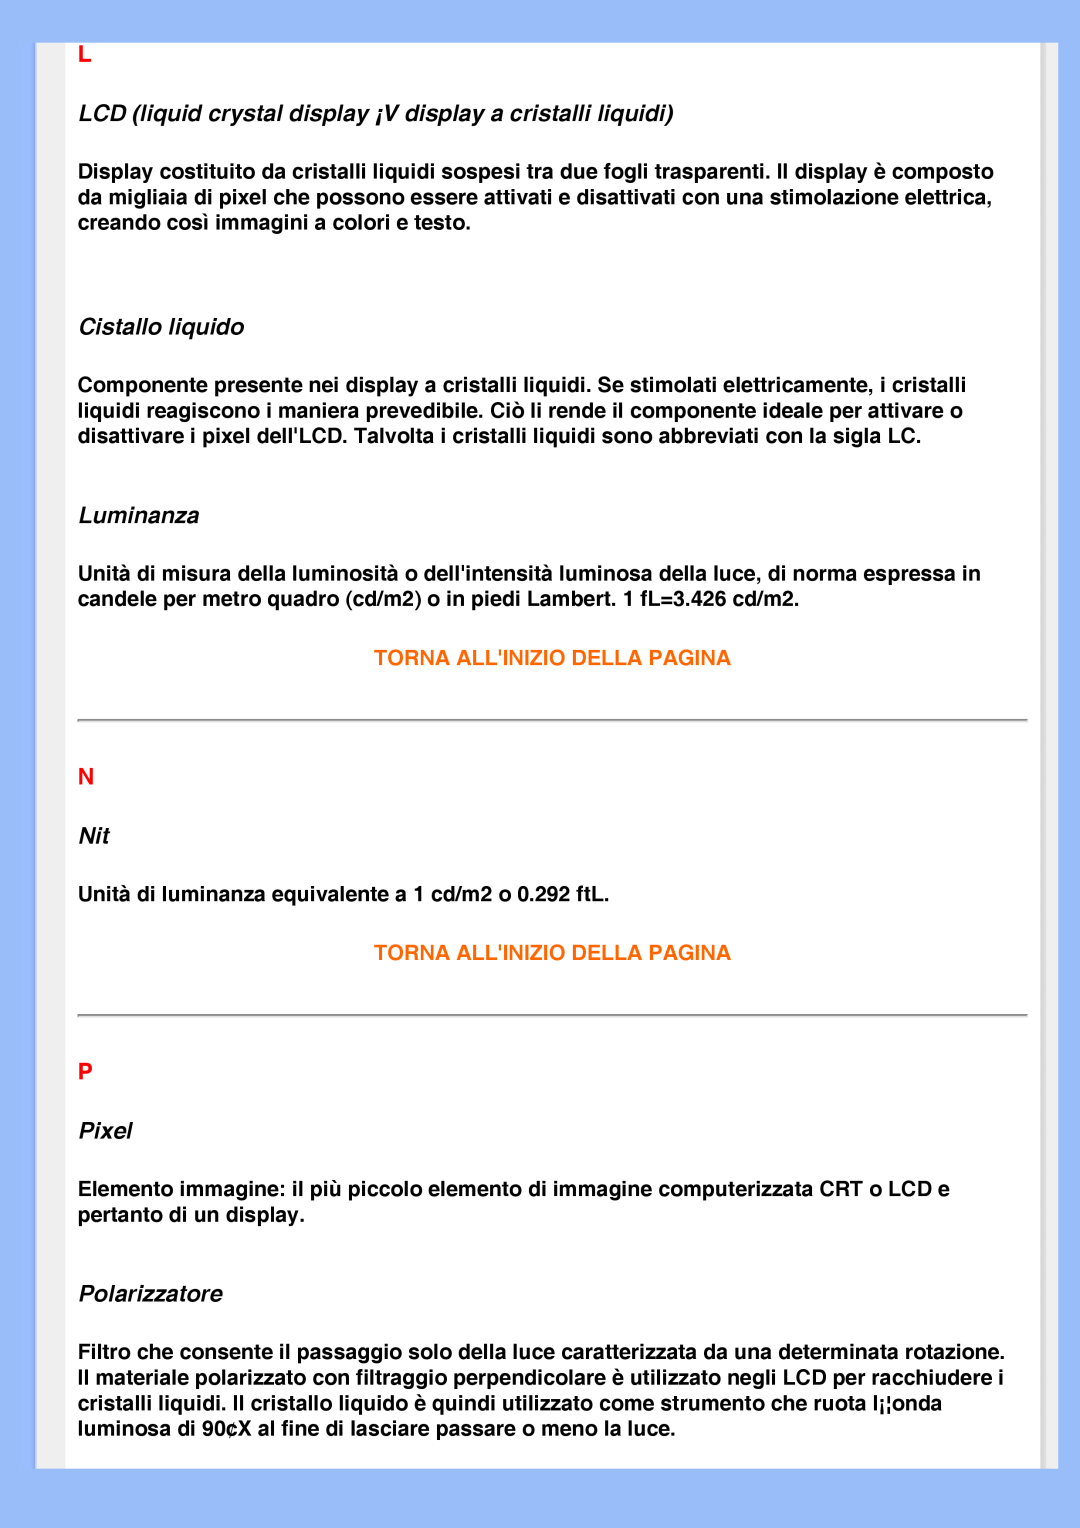 Philips 220VW8 user manual Cistallo liquido, Luminanza, Pixel, Polarizzatore, Torna Allinizio Della Pagina 